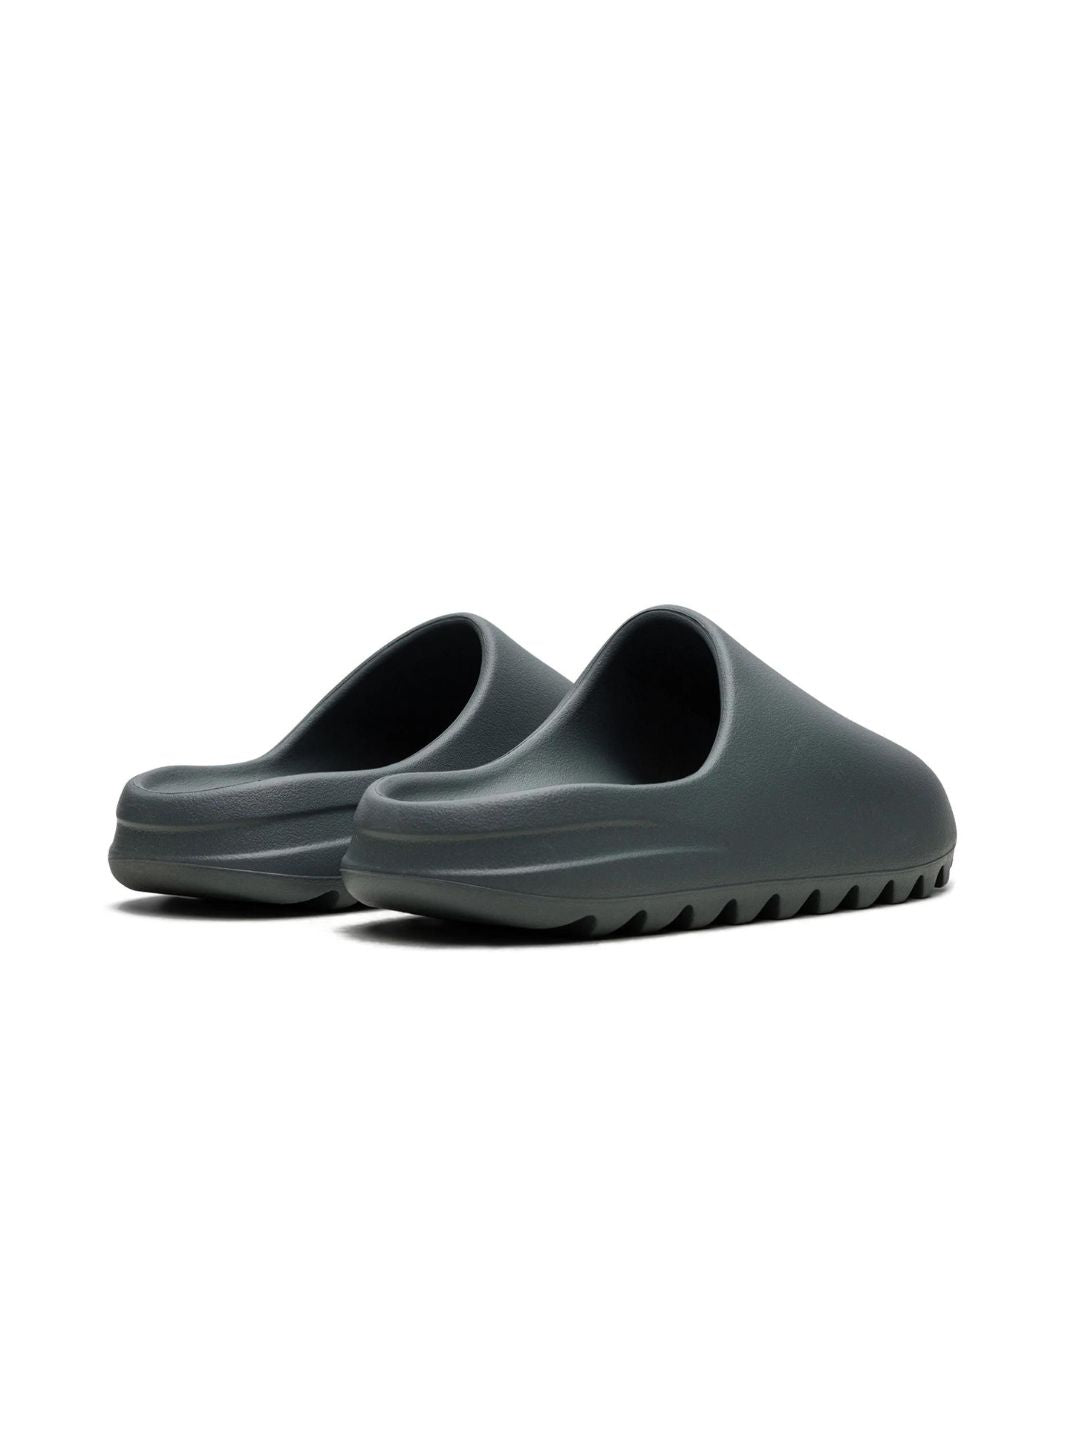 Adidas Yeezy Slide Slate Grey - ID2350 | ResellZone